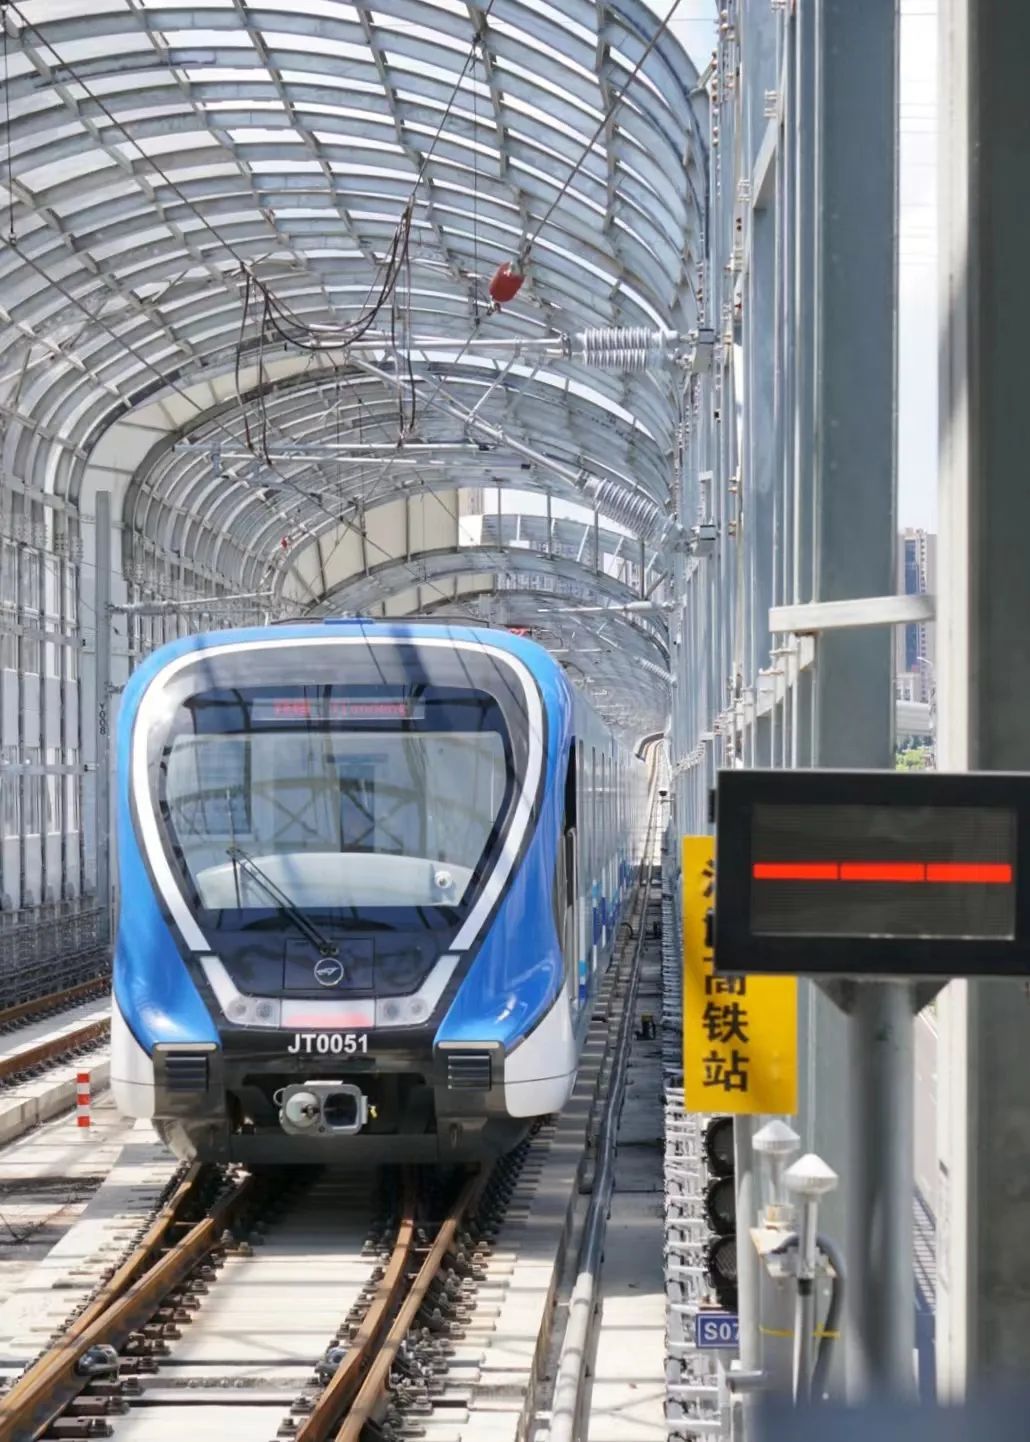 拍摄:苟泳霖市郊铁路跳磴至江津线项目起于重庆轨道交通5号线跳磴站